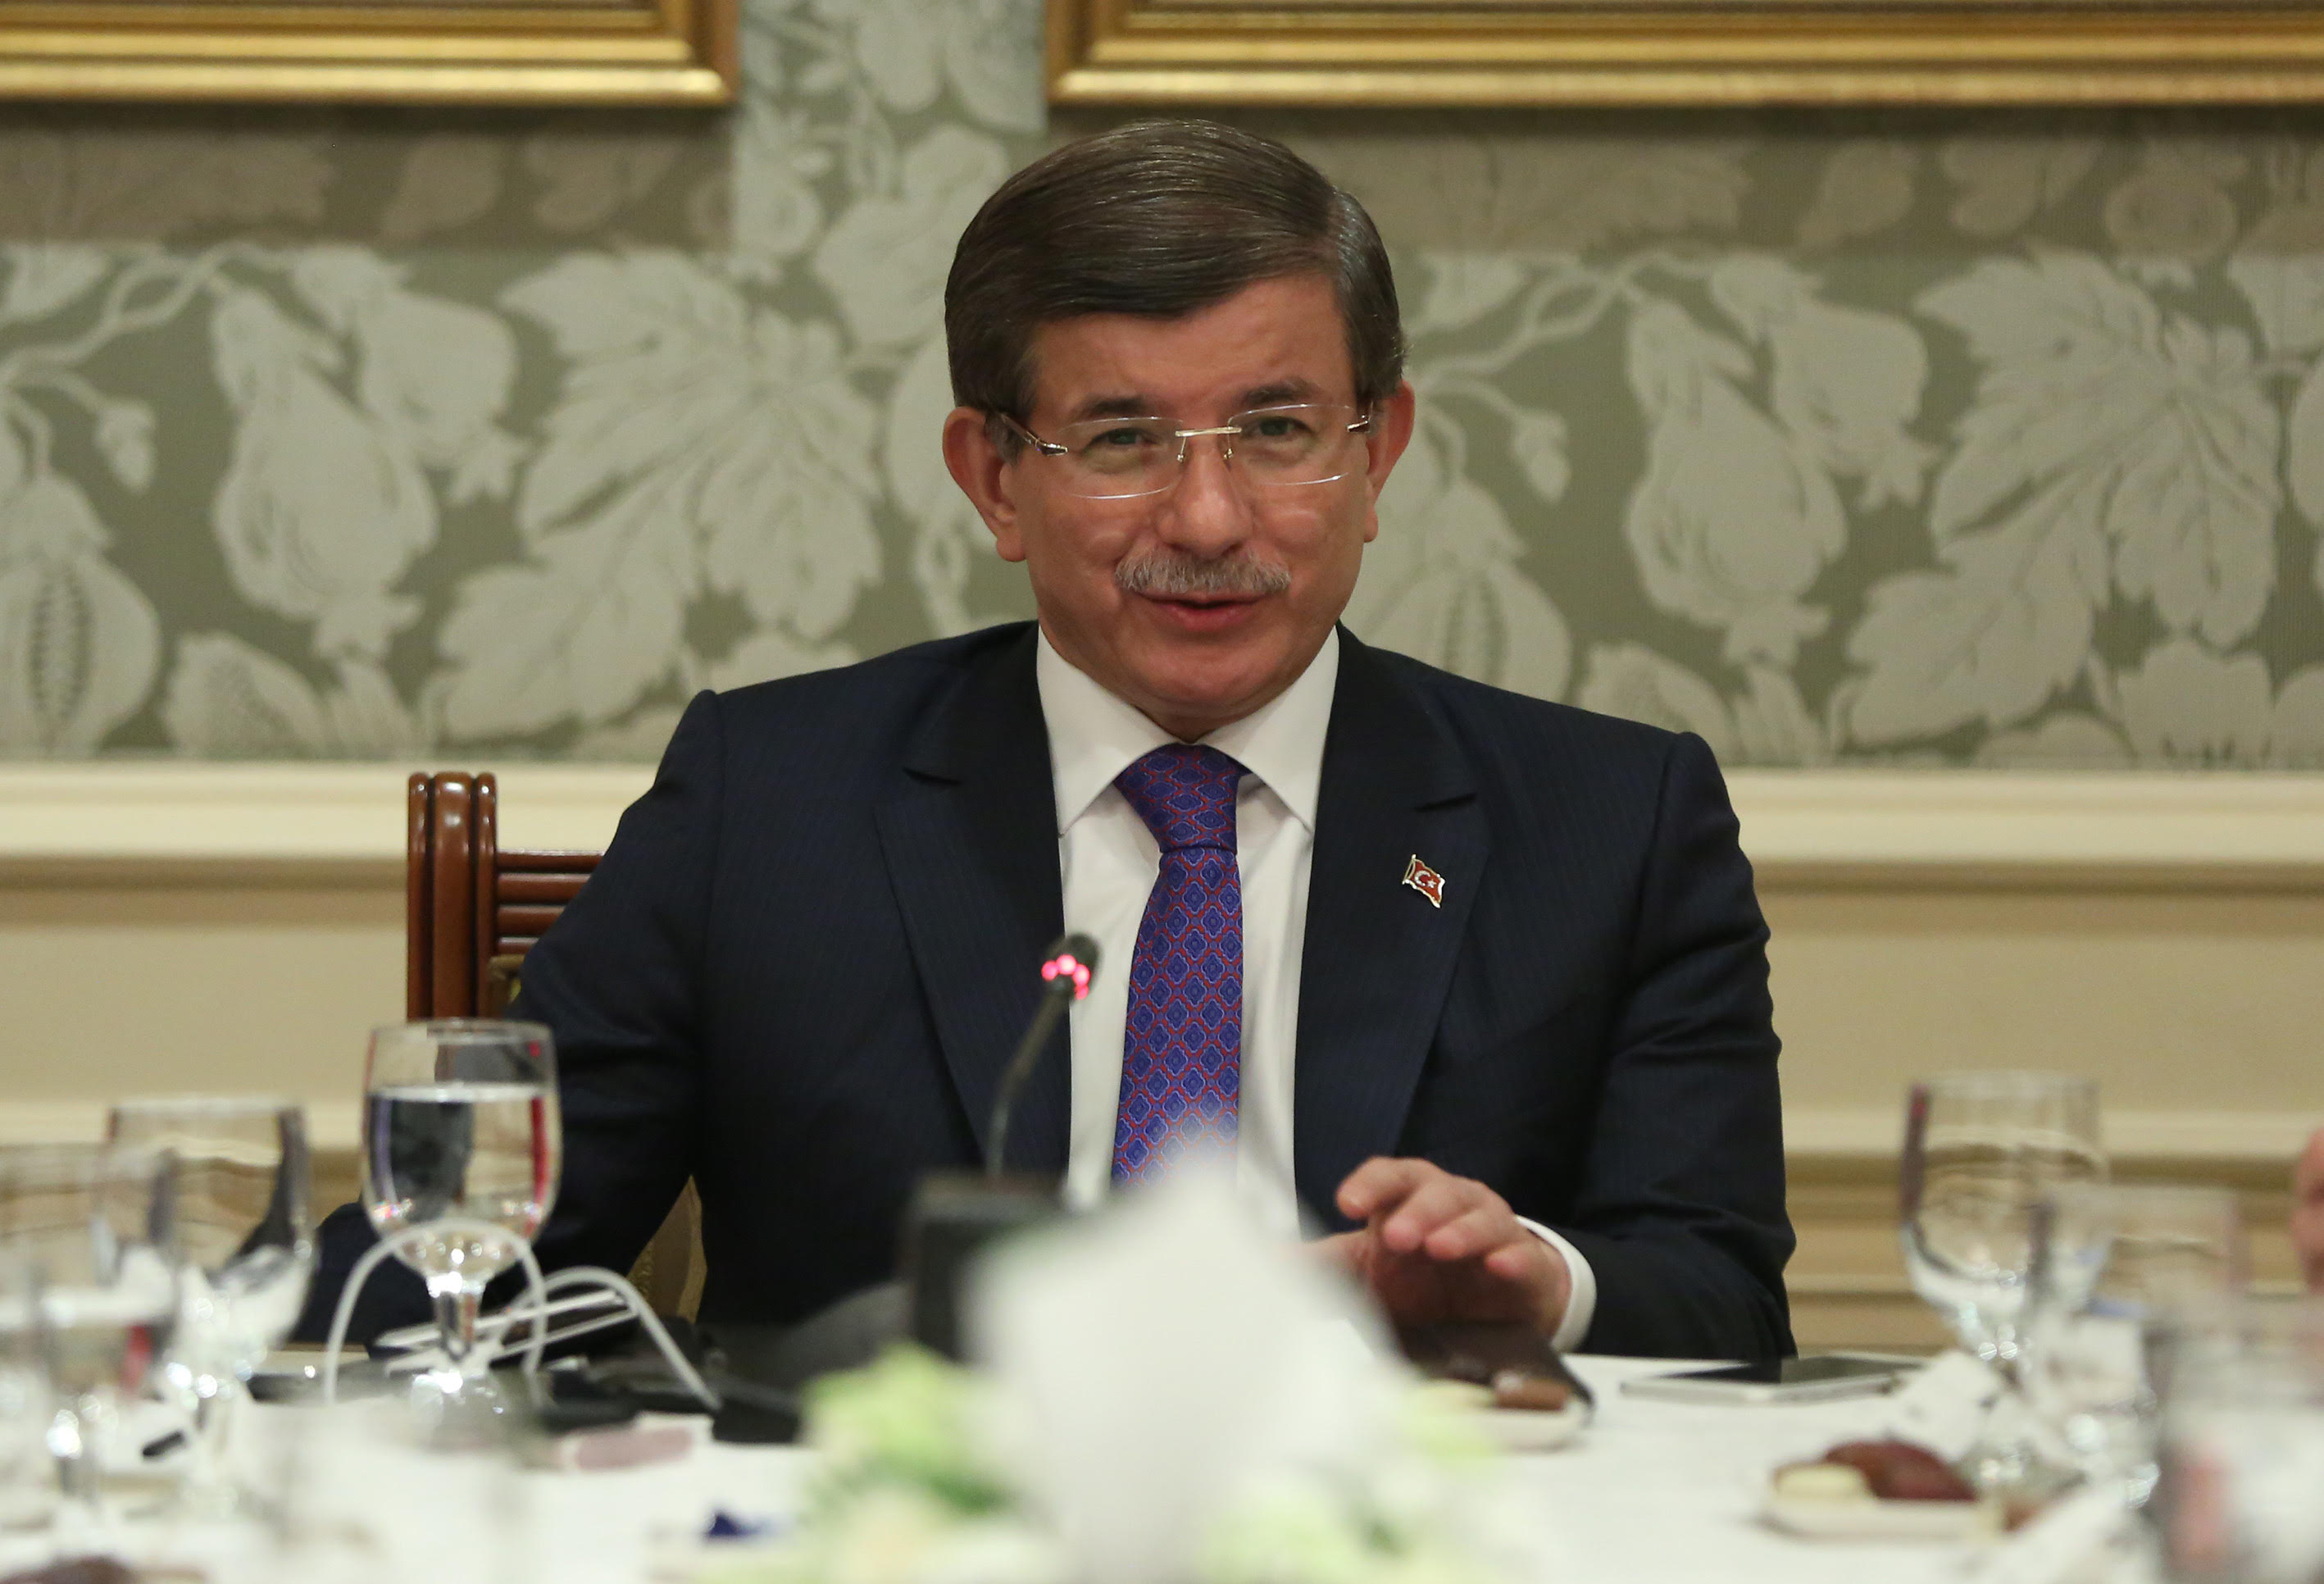 Başbakan Davutoğlu'ndan gündeme dair açıklamalar